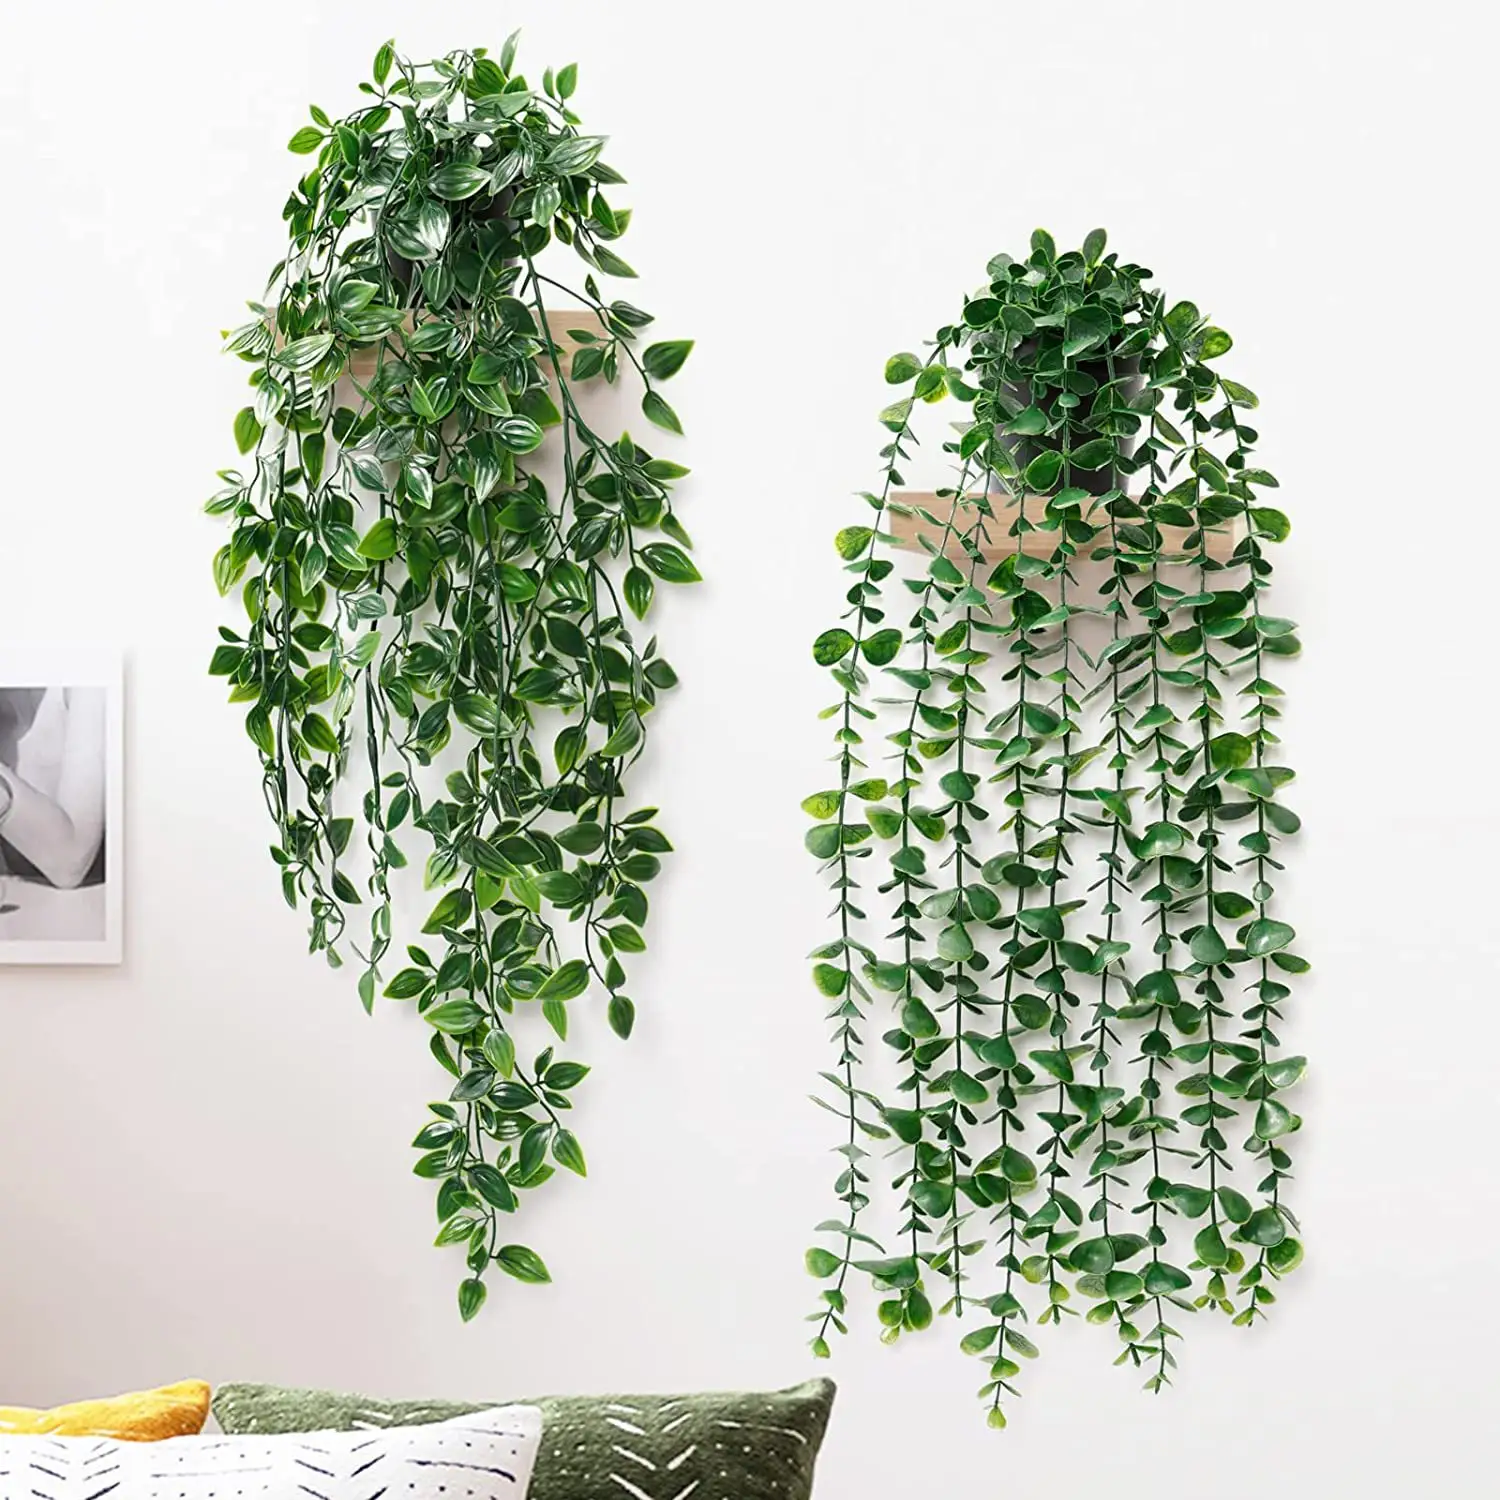 Tanaman gantung hijau buatan, tanaman hias dinding luar ruangan